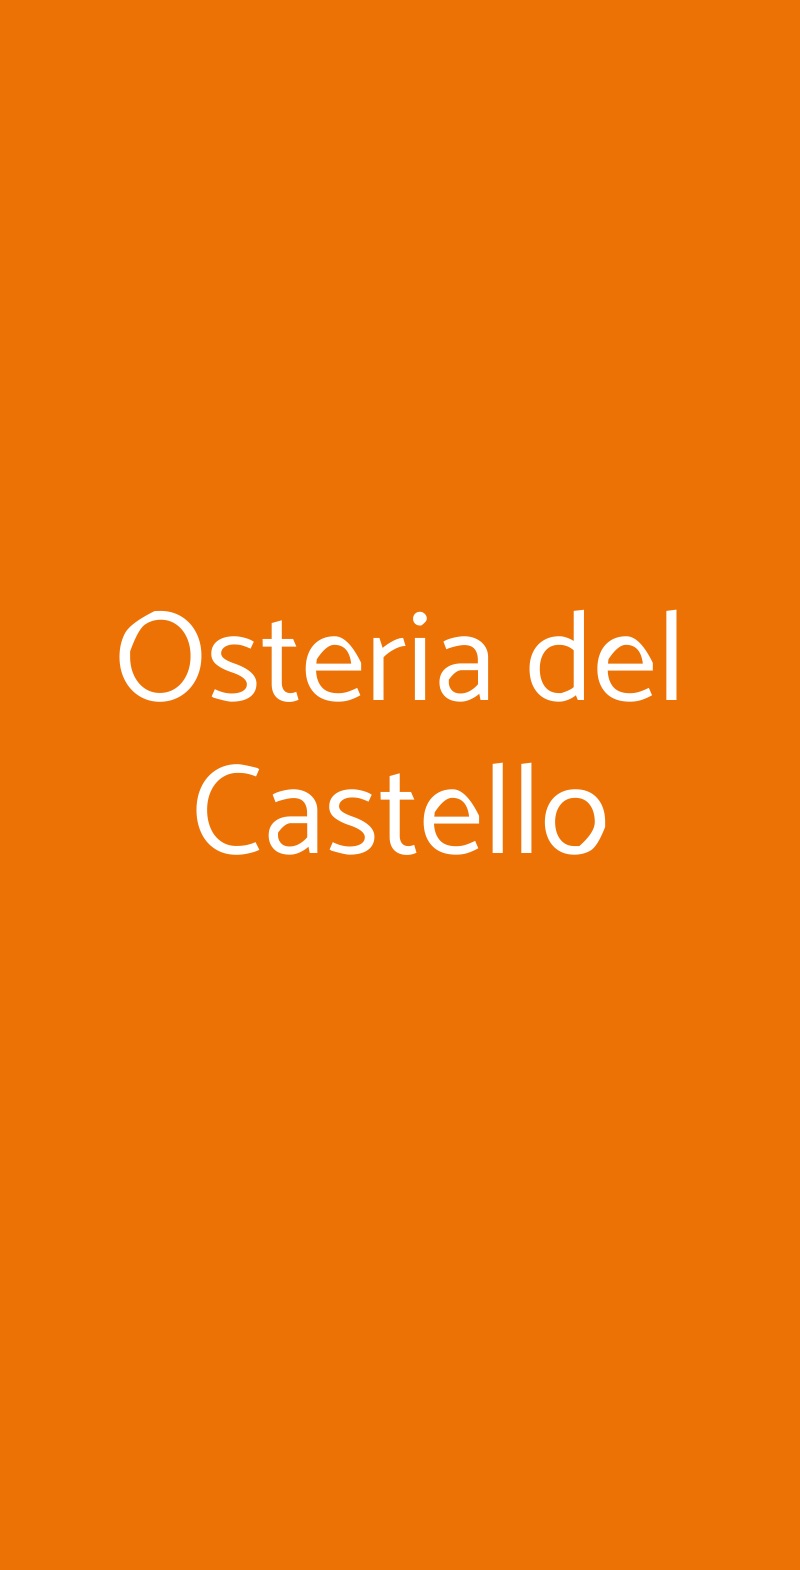 Osteria del Castello Cerveteri menù 1 pagina